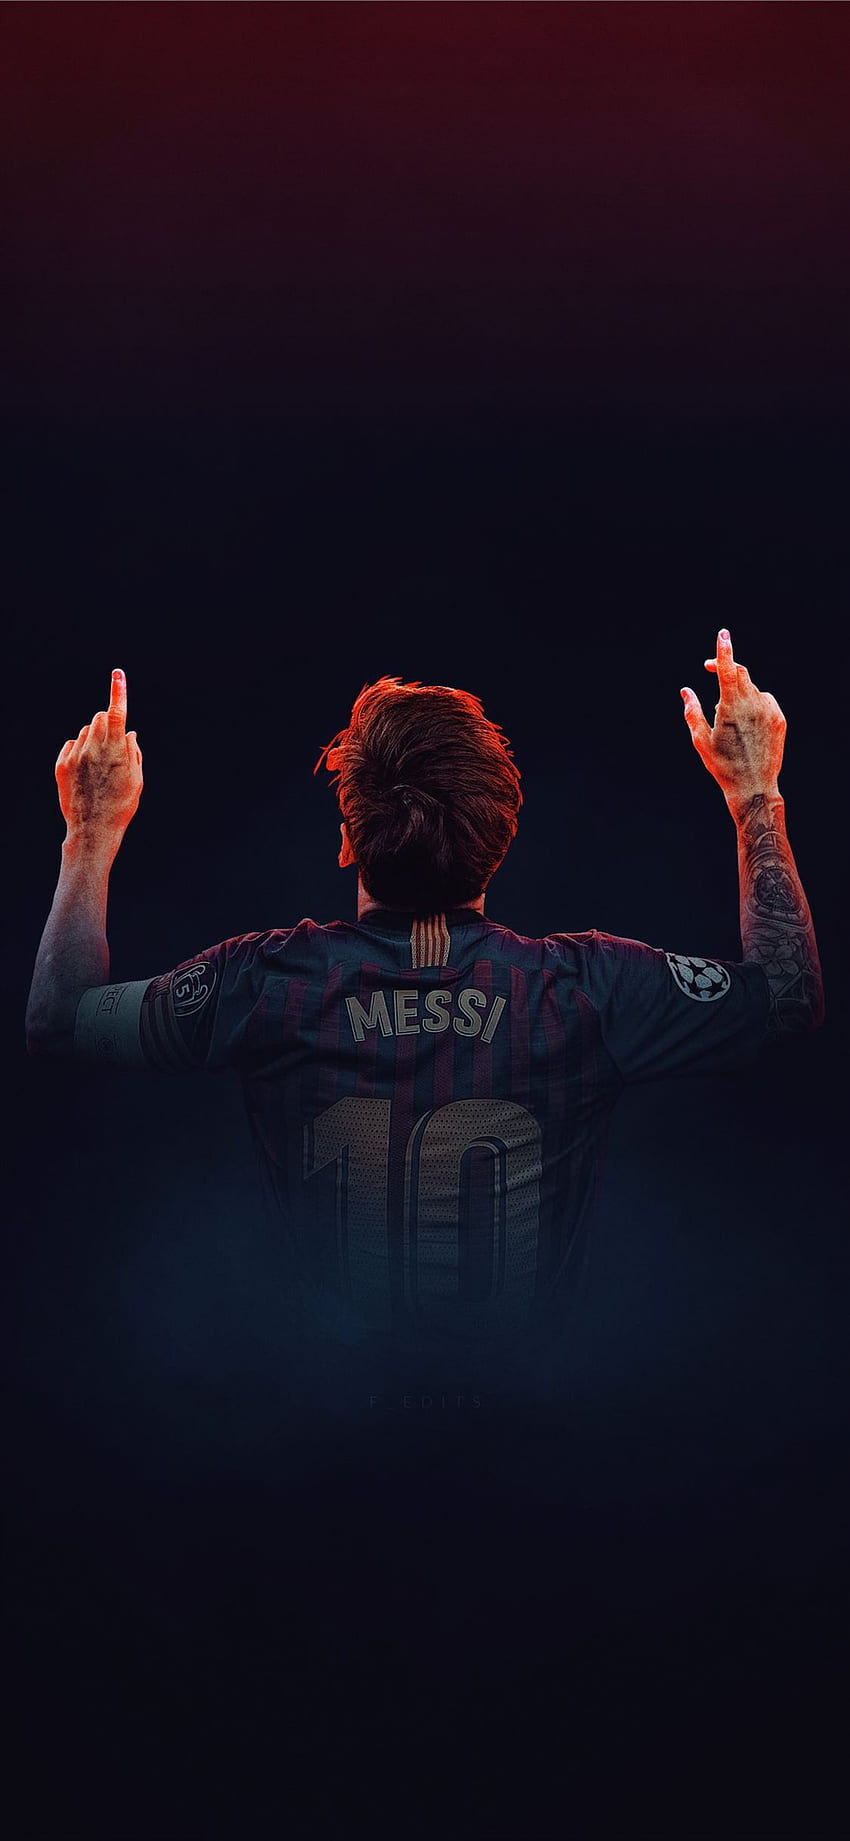 Hãy khám phá bức hình nền Messi đầy năng động và sáng tạo, với khả năng sáng tạo điêu luyện và kỹ thuật chuyền bóng đầy tài năng, không có gì xoáy sâu hơn khi chạm thấy sự tận thu của thời gian, truy cập ngay để tải về ngay hôm nay !